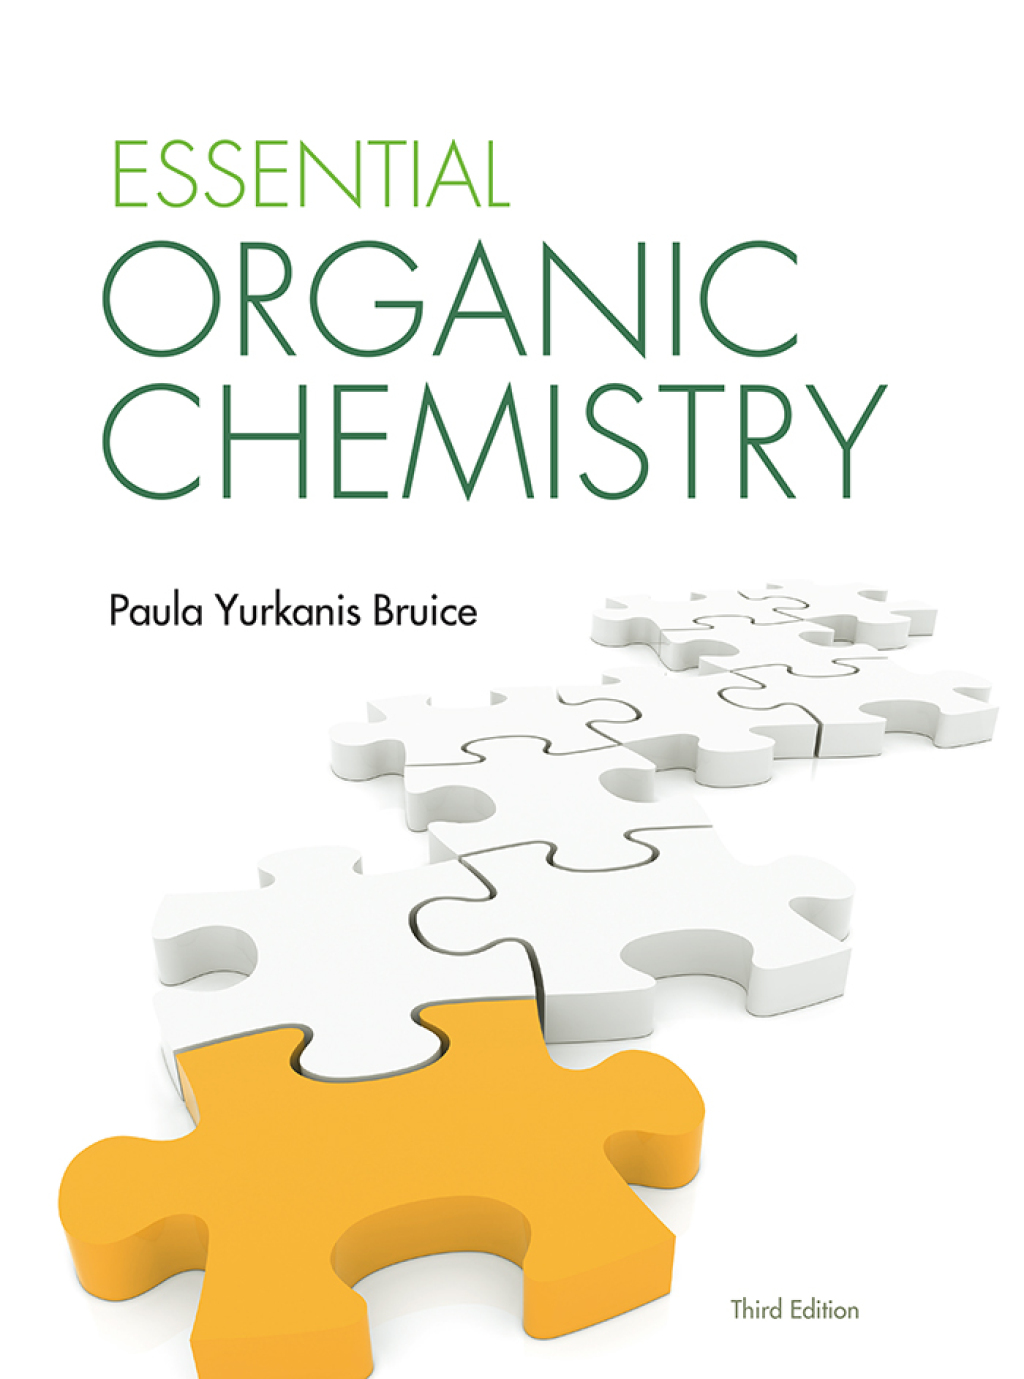 Essential Organic Chemistry - 3rd Edition (eBook)